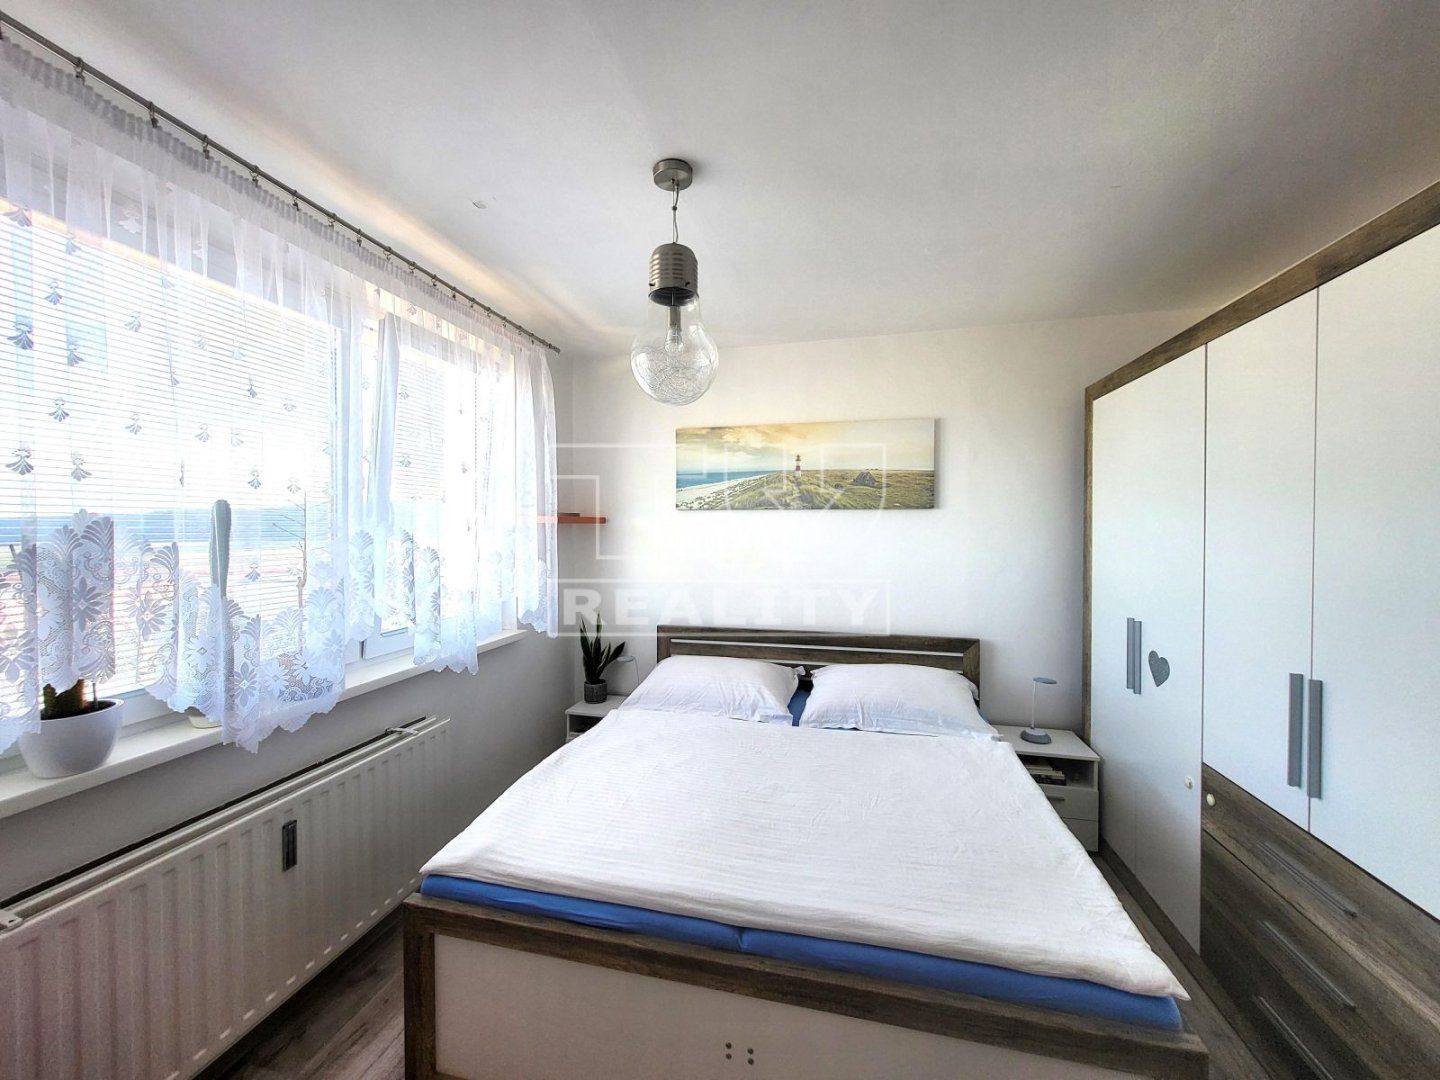 Na predaj 3-izbový byt s lodžiou, Poprad – Starý Juh, 61 m2